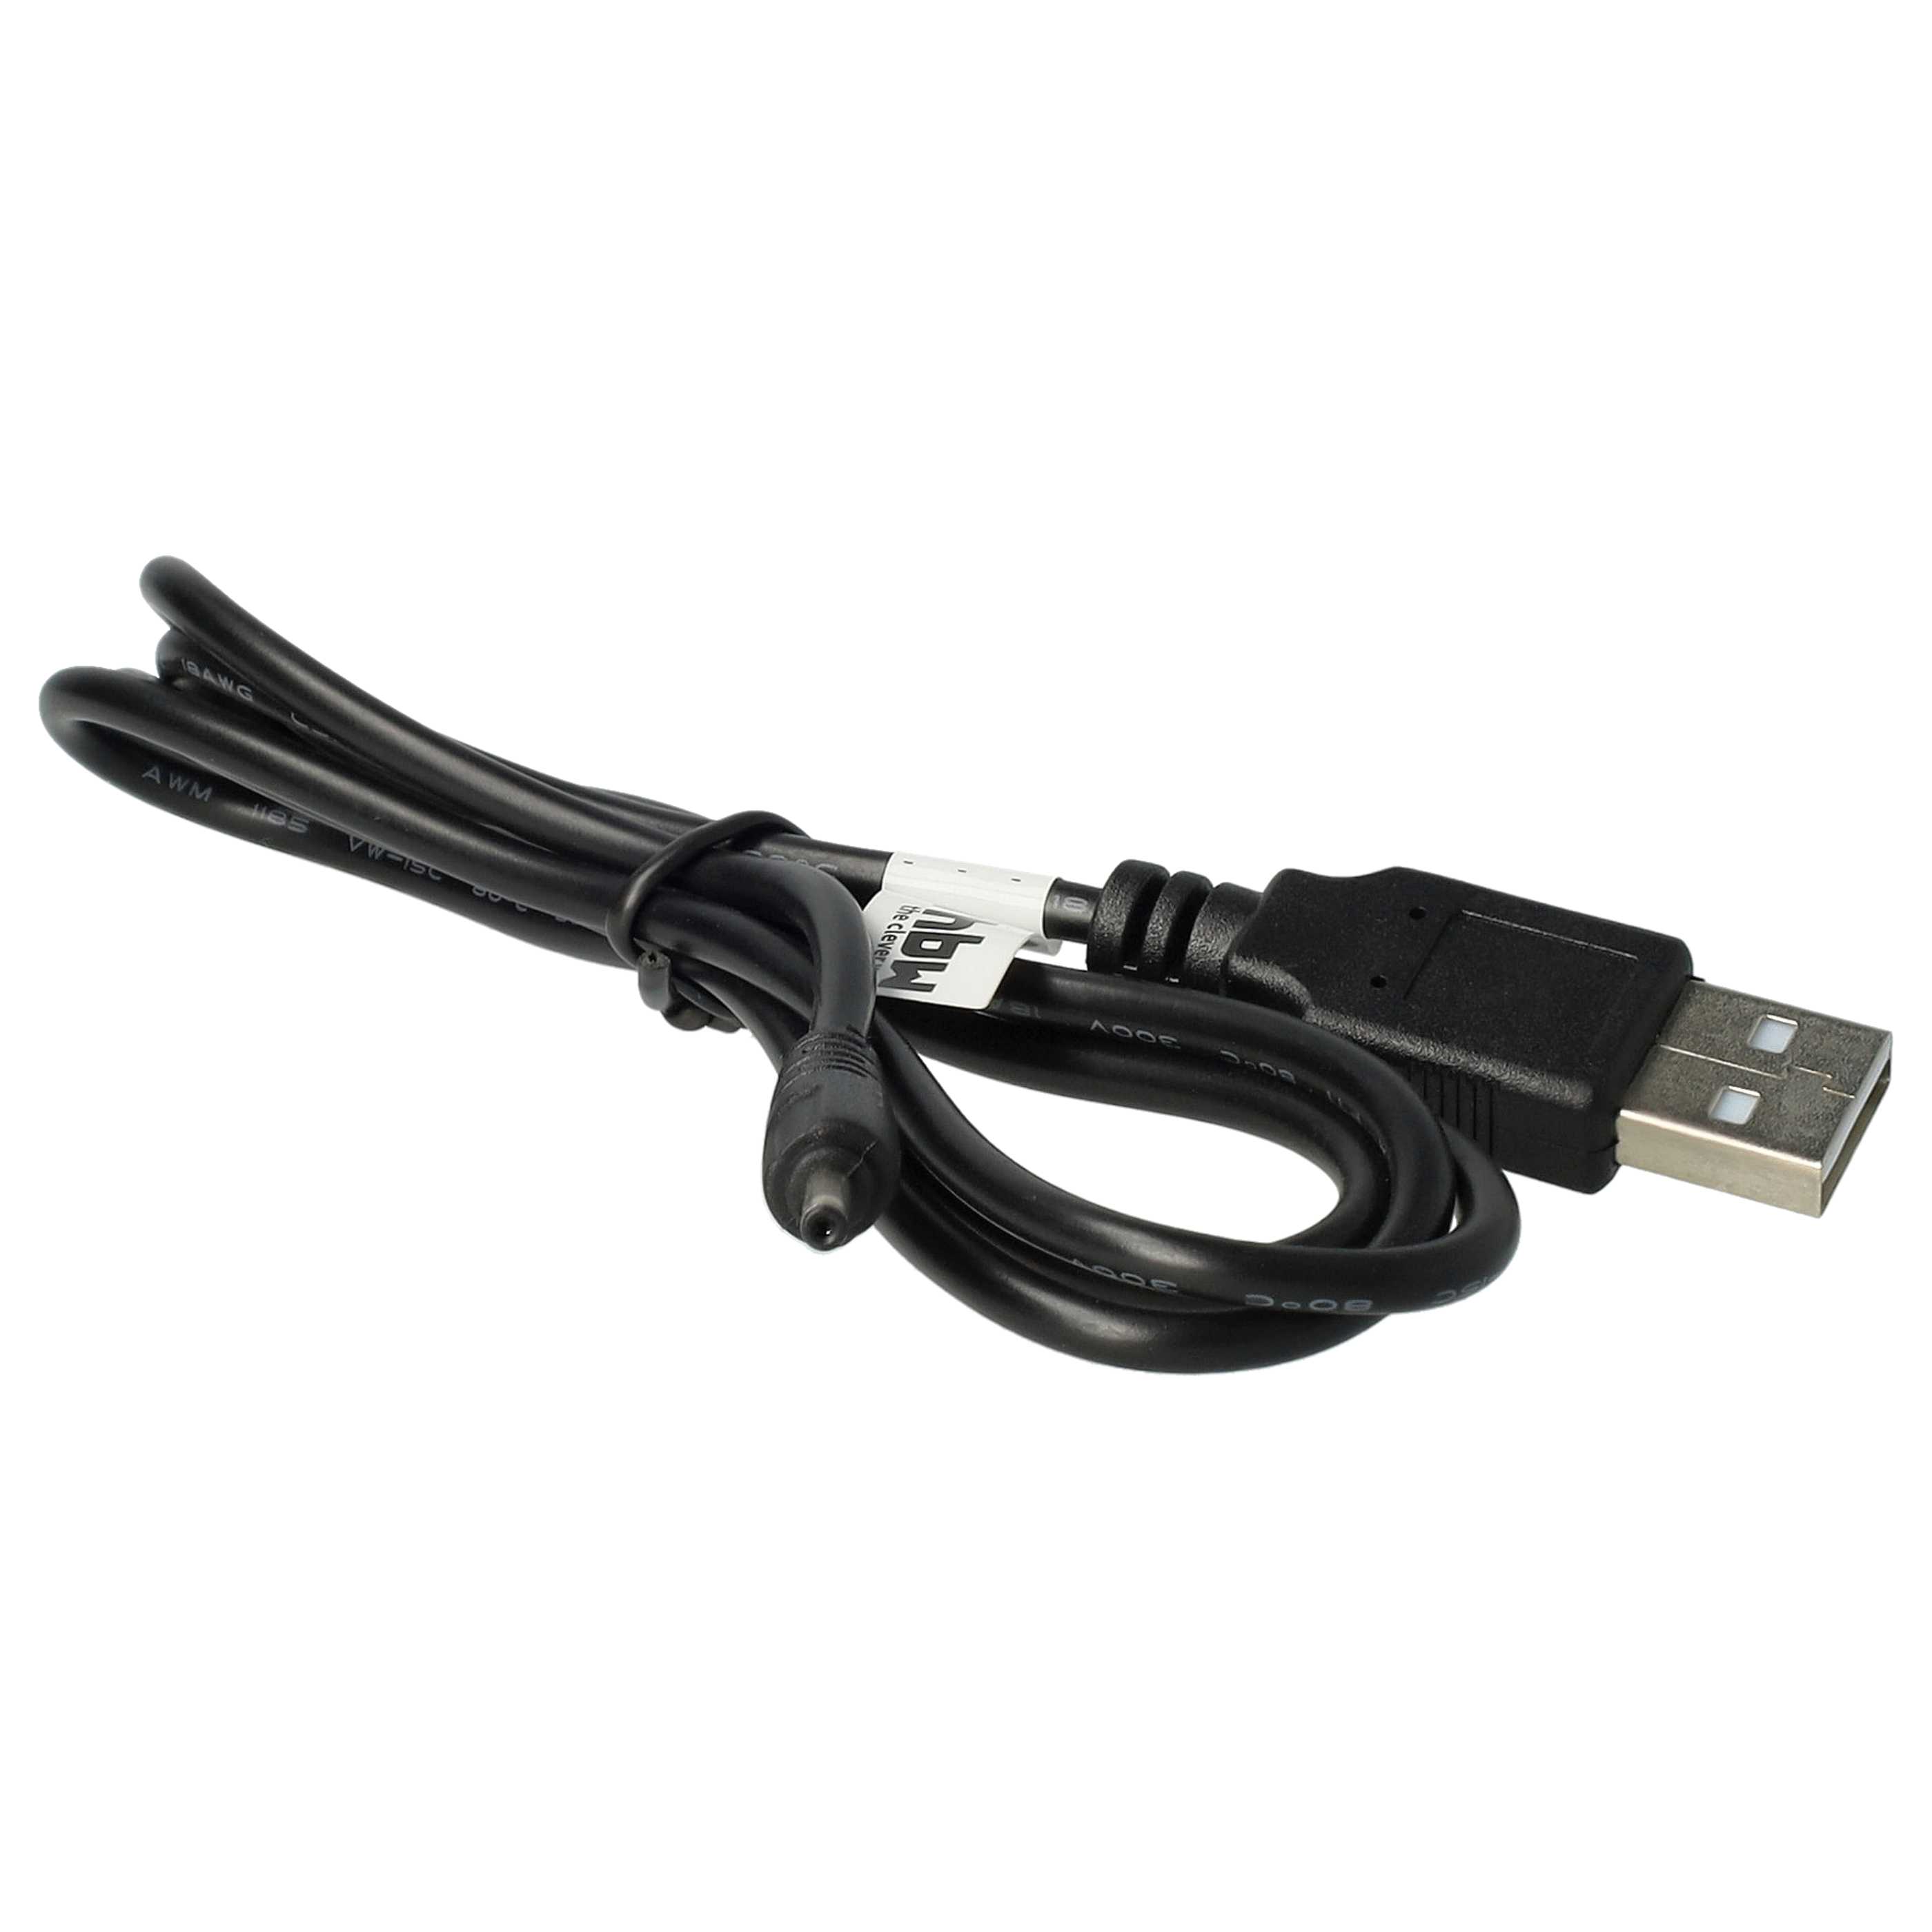 Cable de carga USB para tablets Ampe, etc. - 100 cm